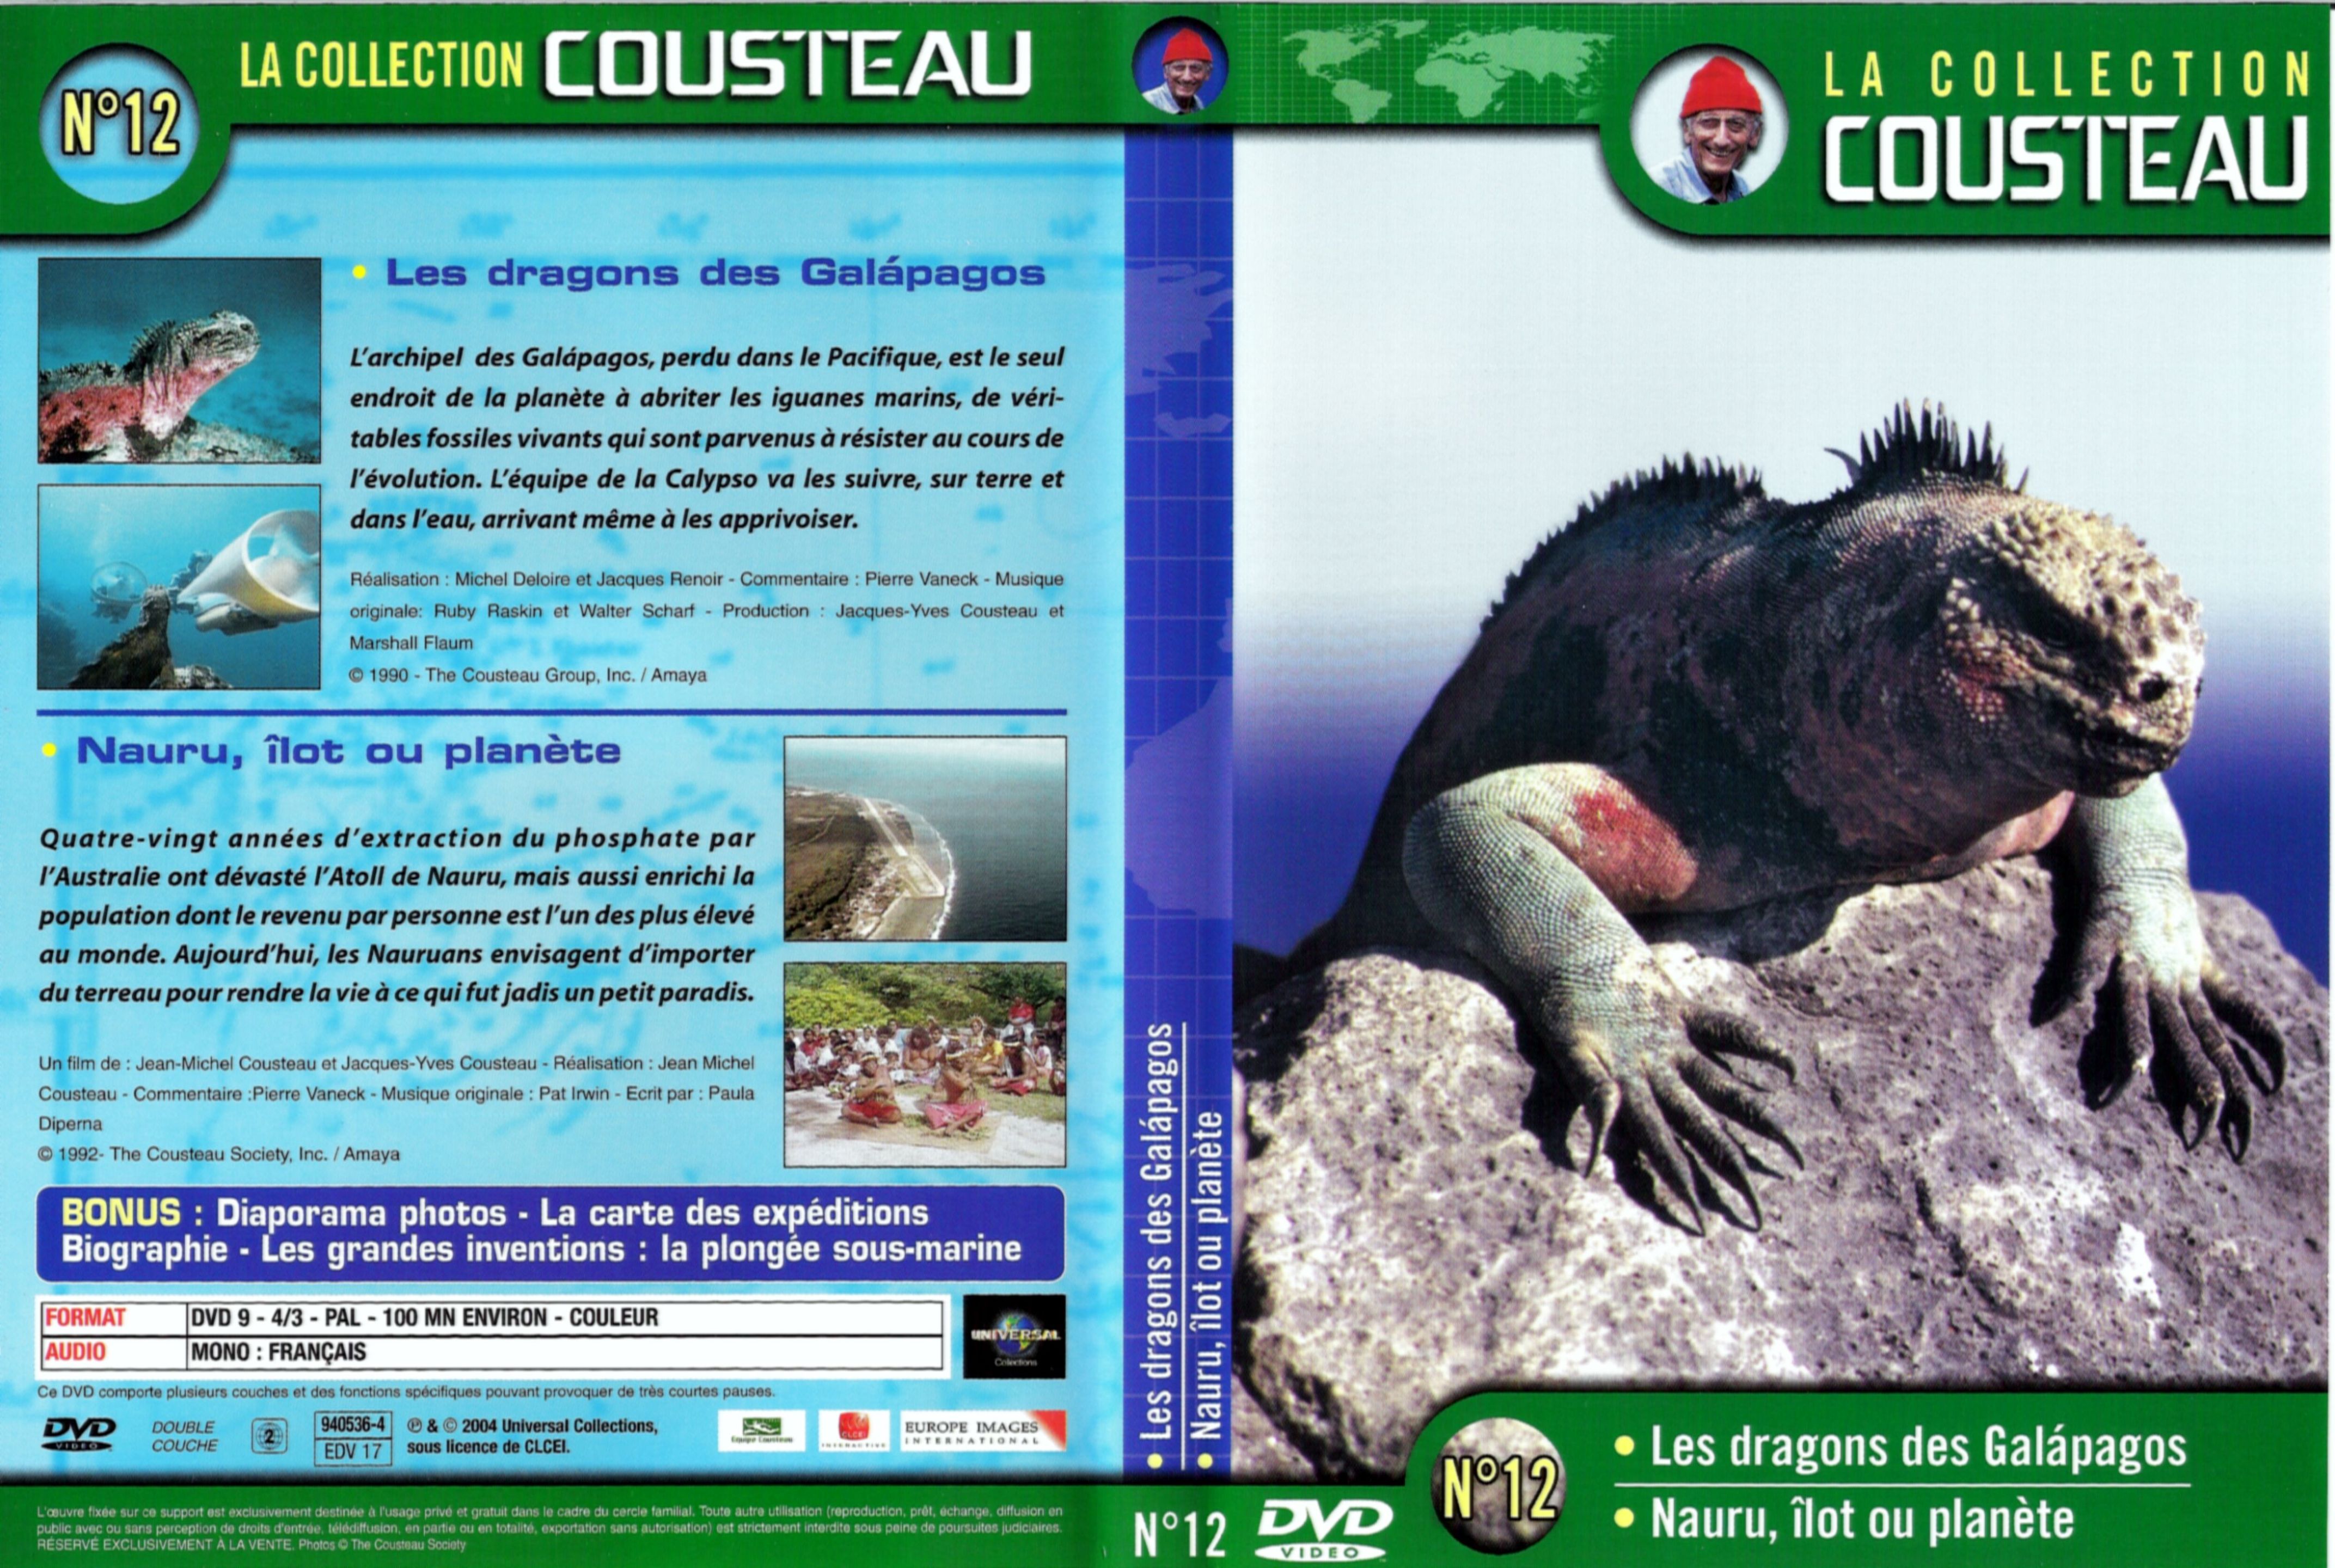 Jaquette DVD Cousteau Collection vol 12